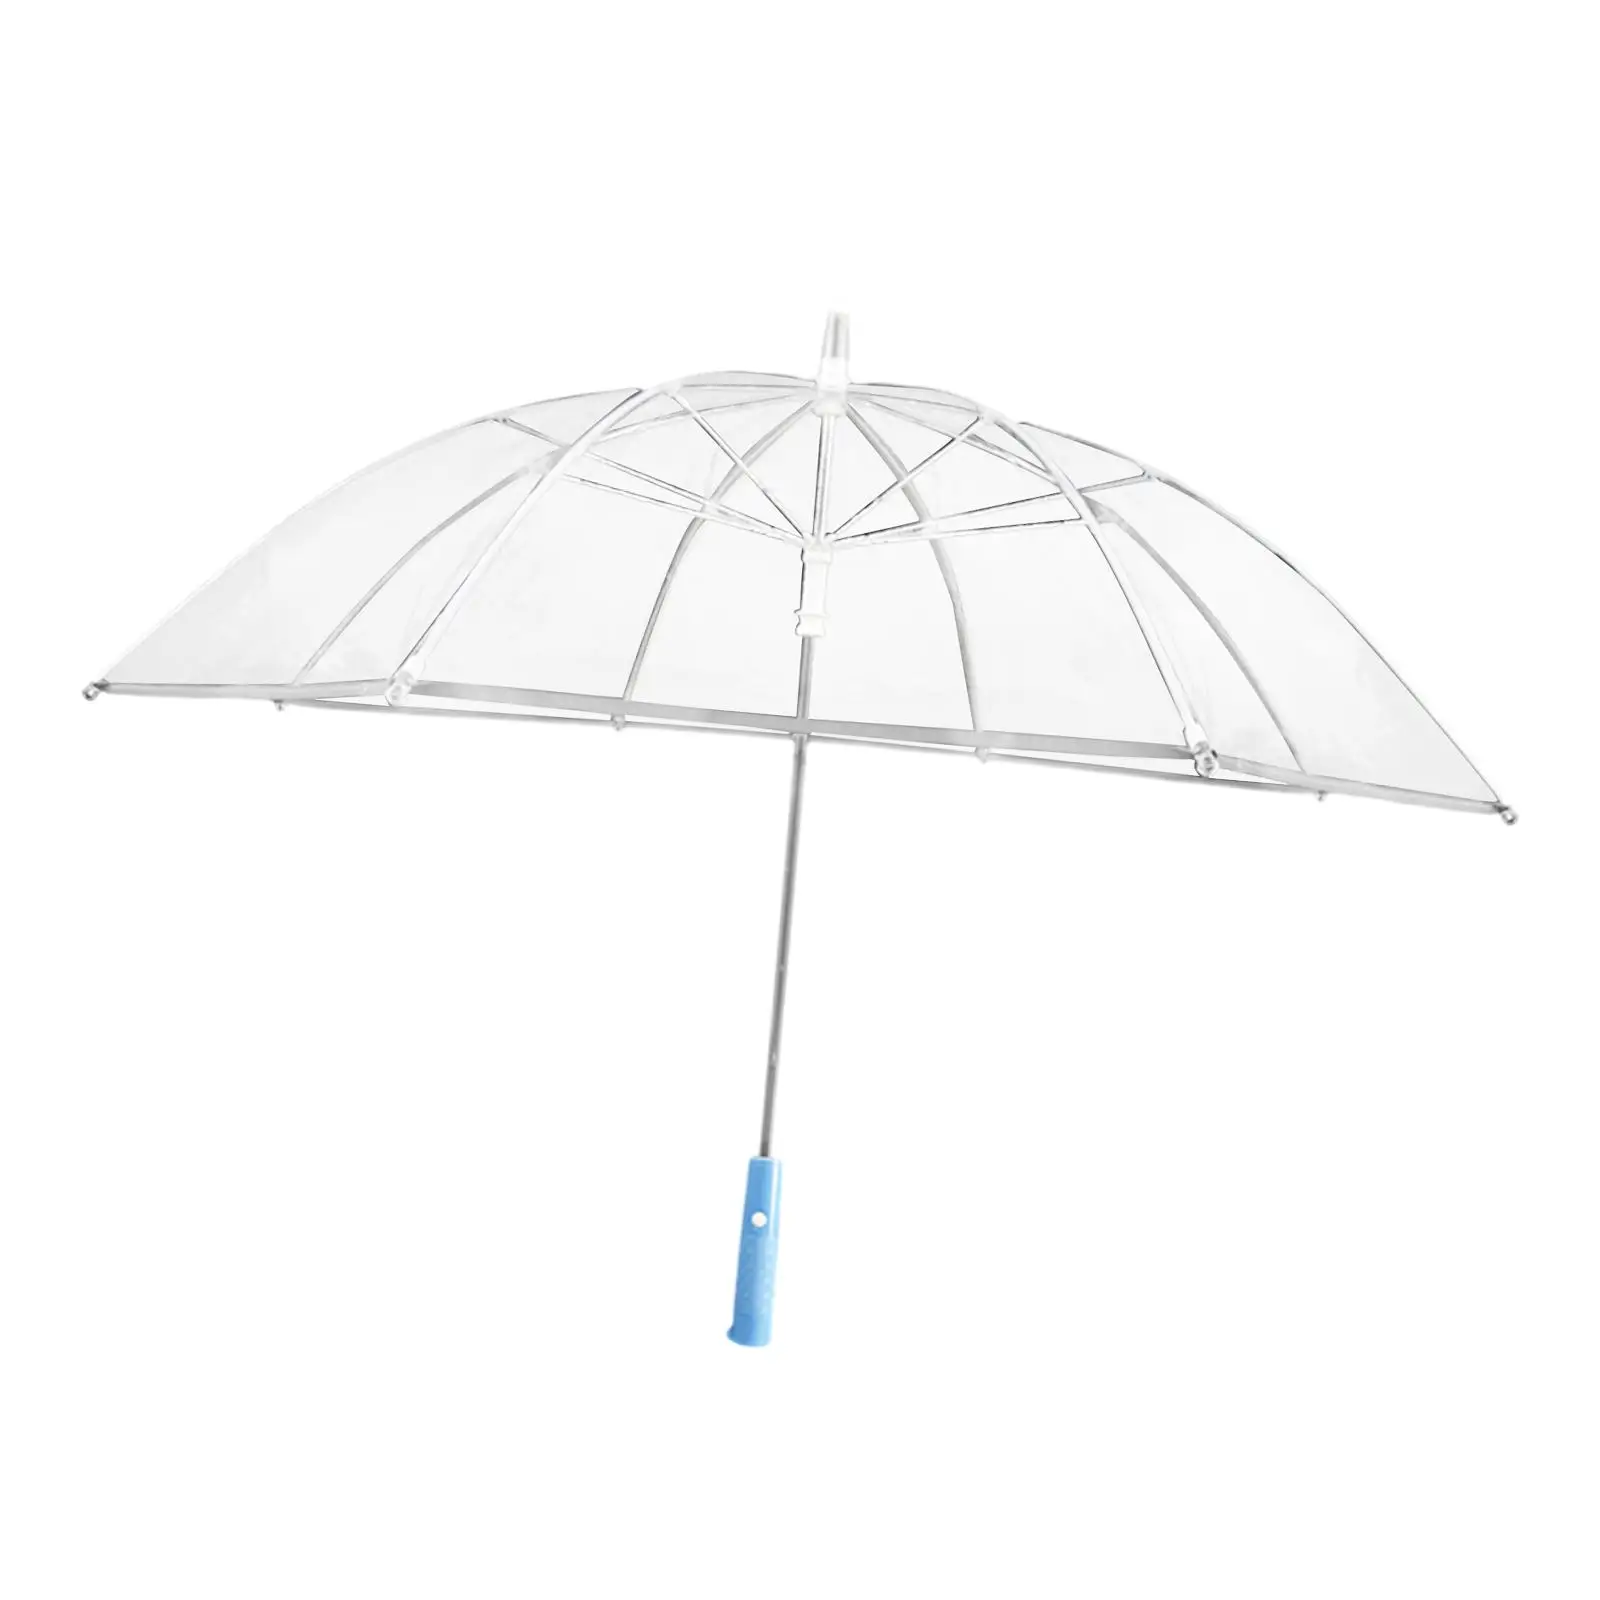 LED Umbrella Stick Umbrella Light up Umbrella Rain Umbrella Straight Umbrella for Outdoor Climbing Backpacking Trips Walking